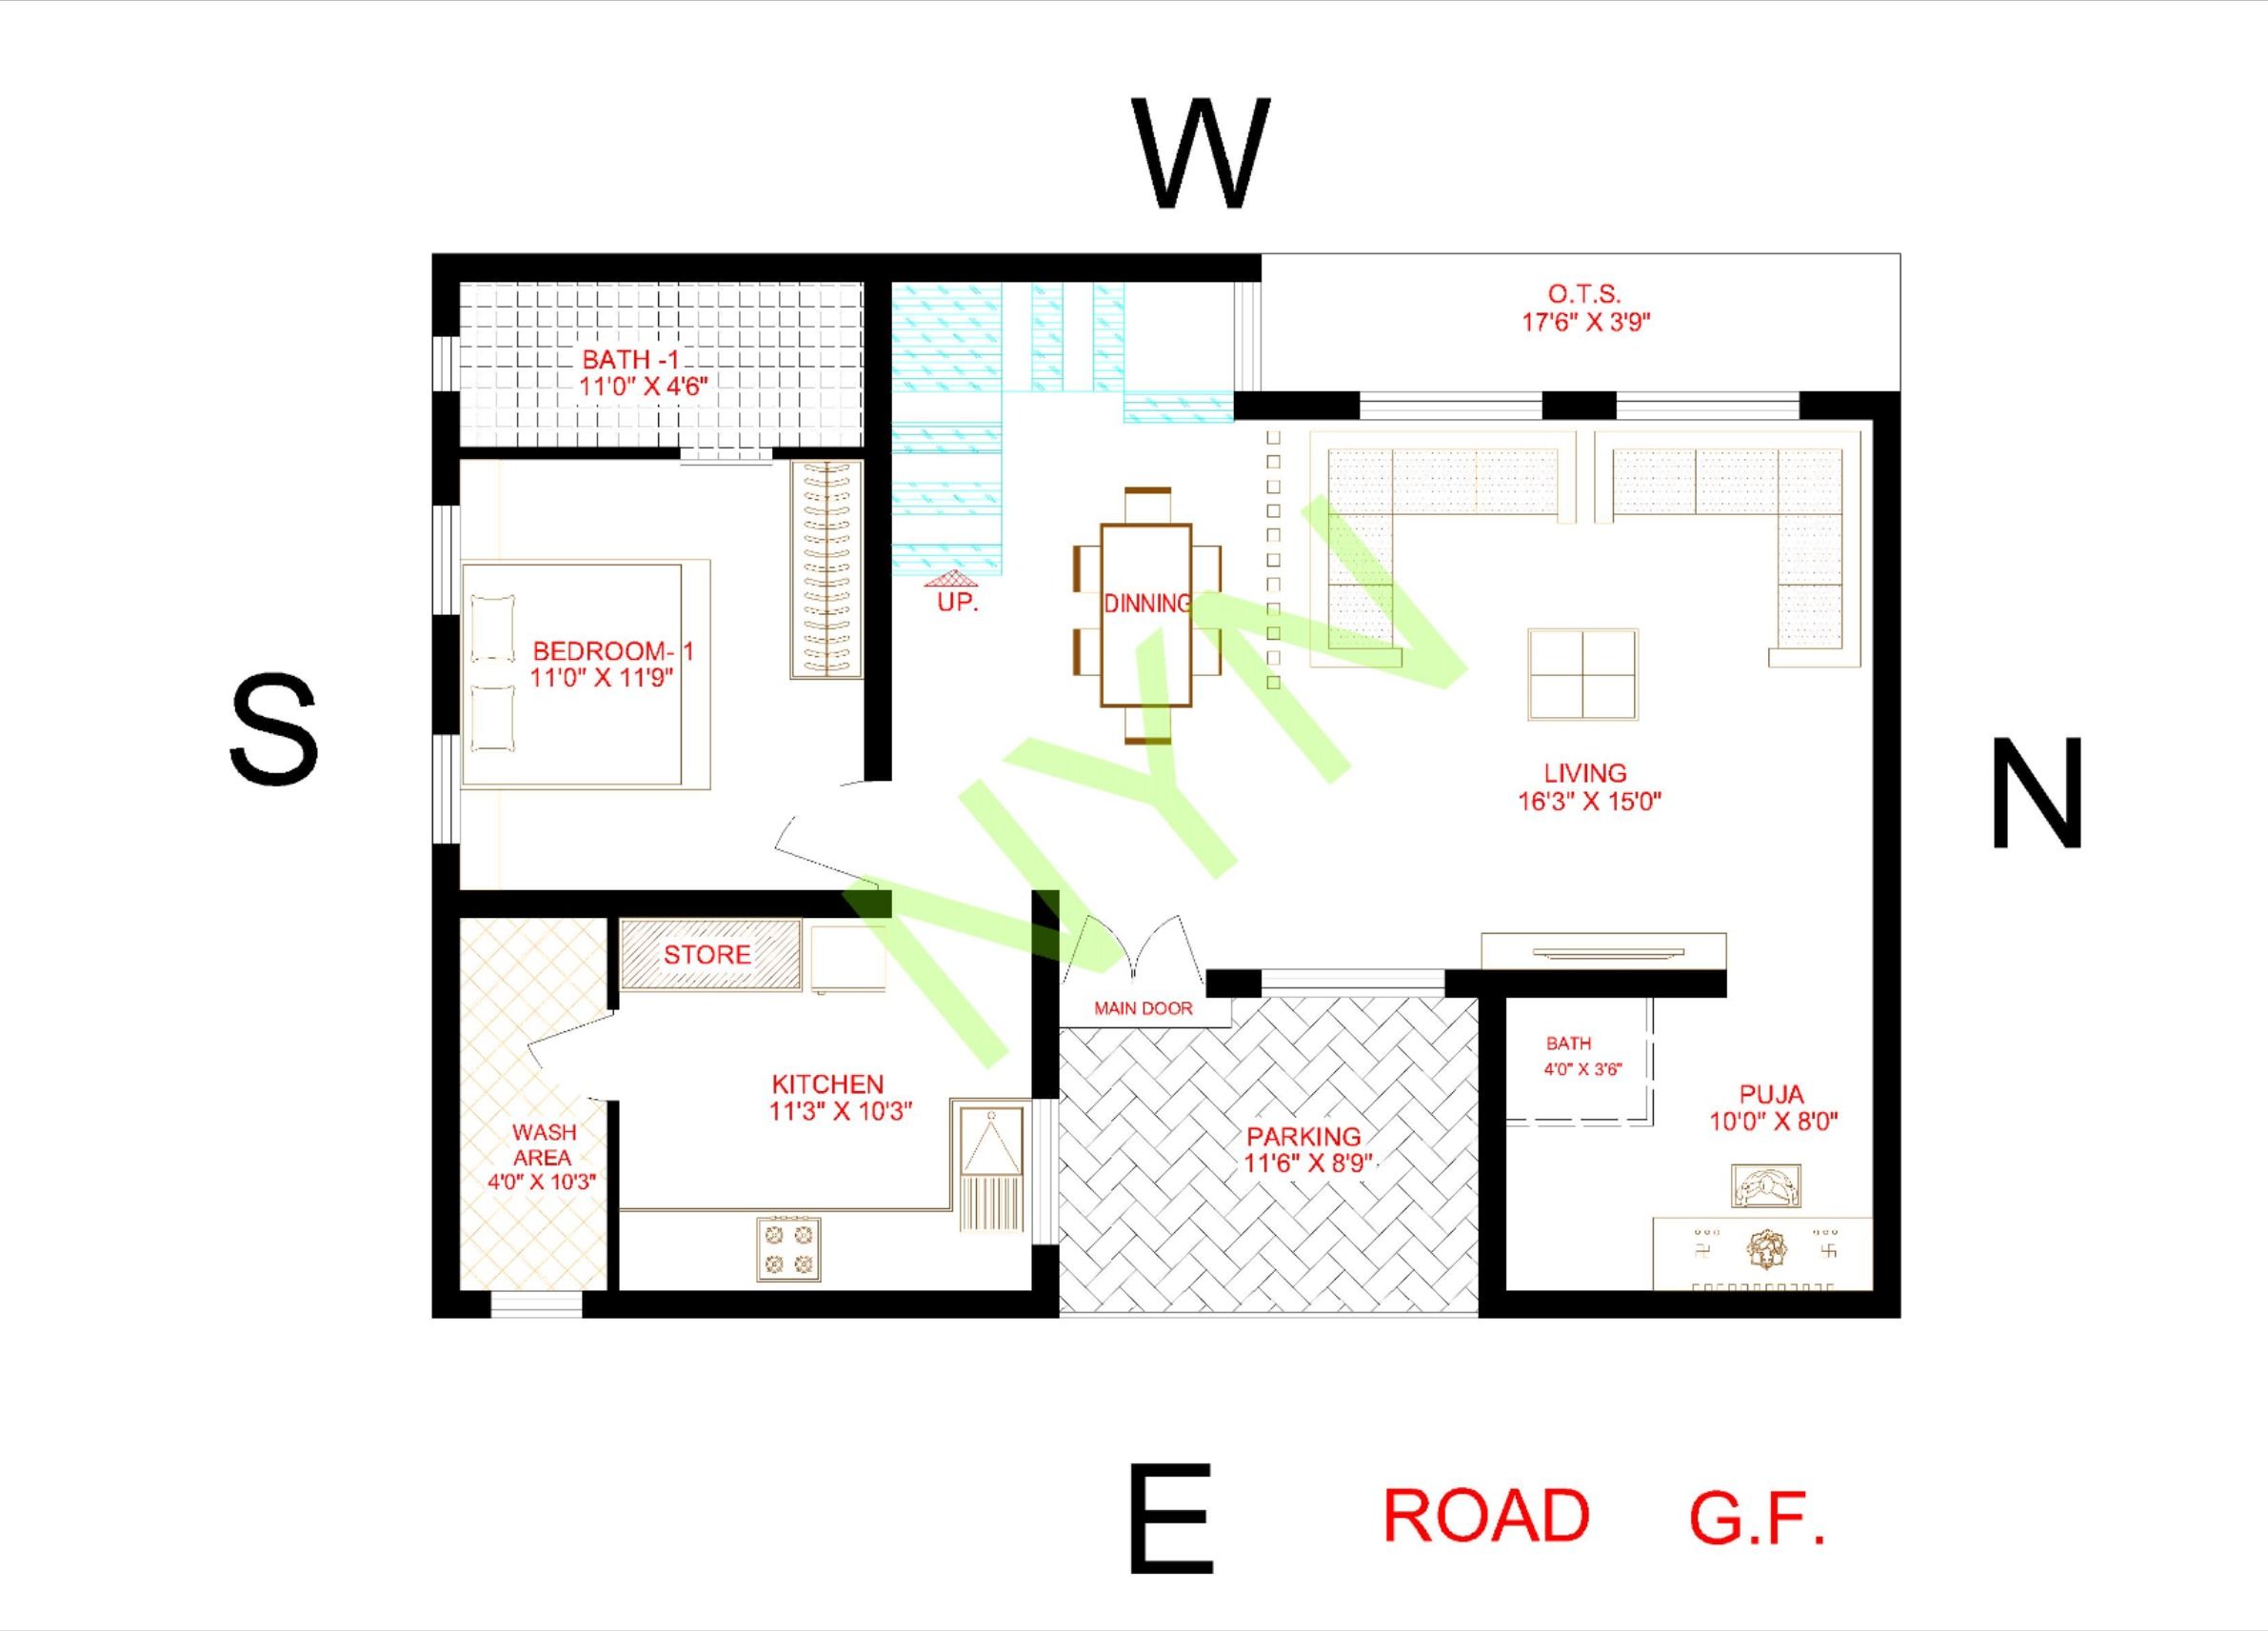 40X30 FLOOR PLAN GF Architecture plan, Floor plans, How